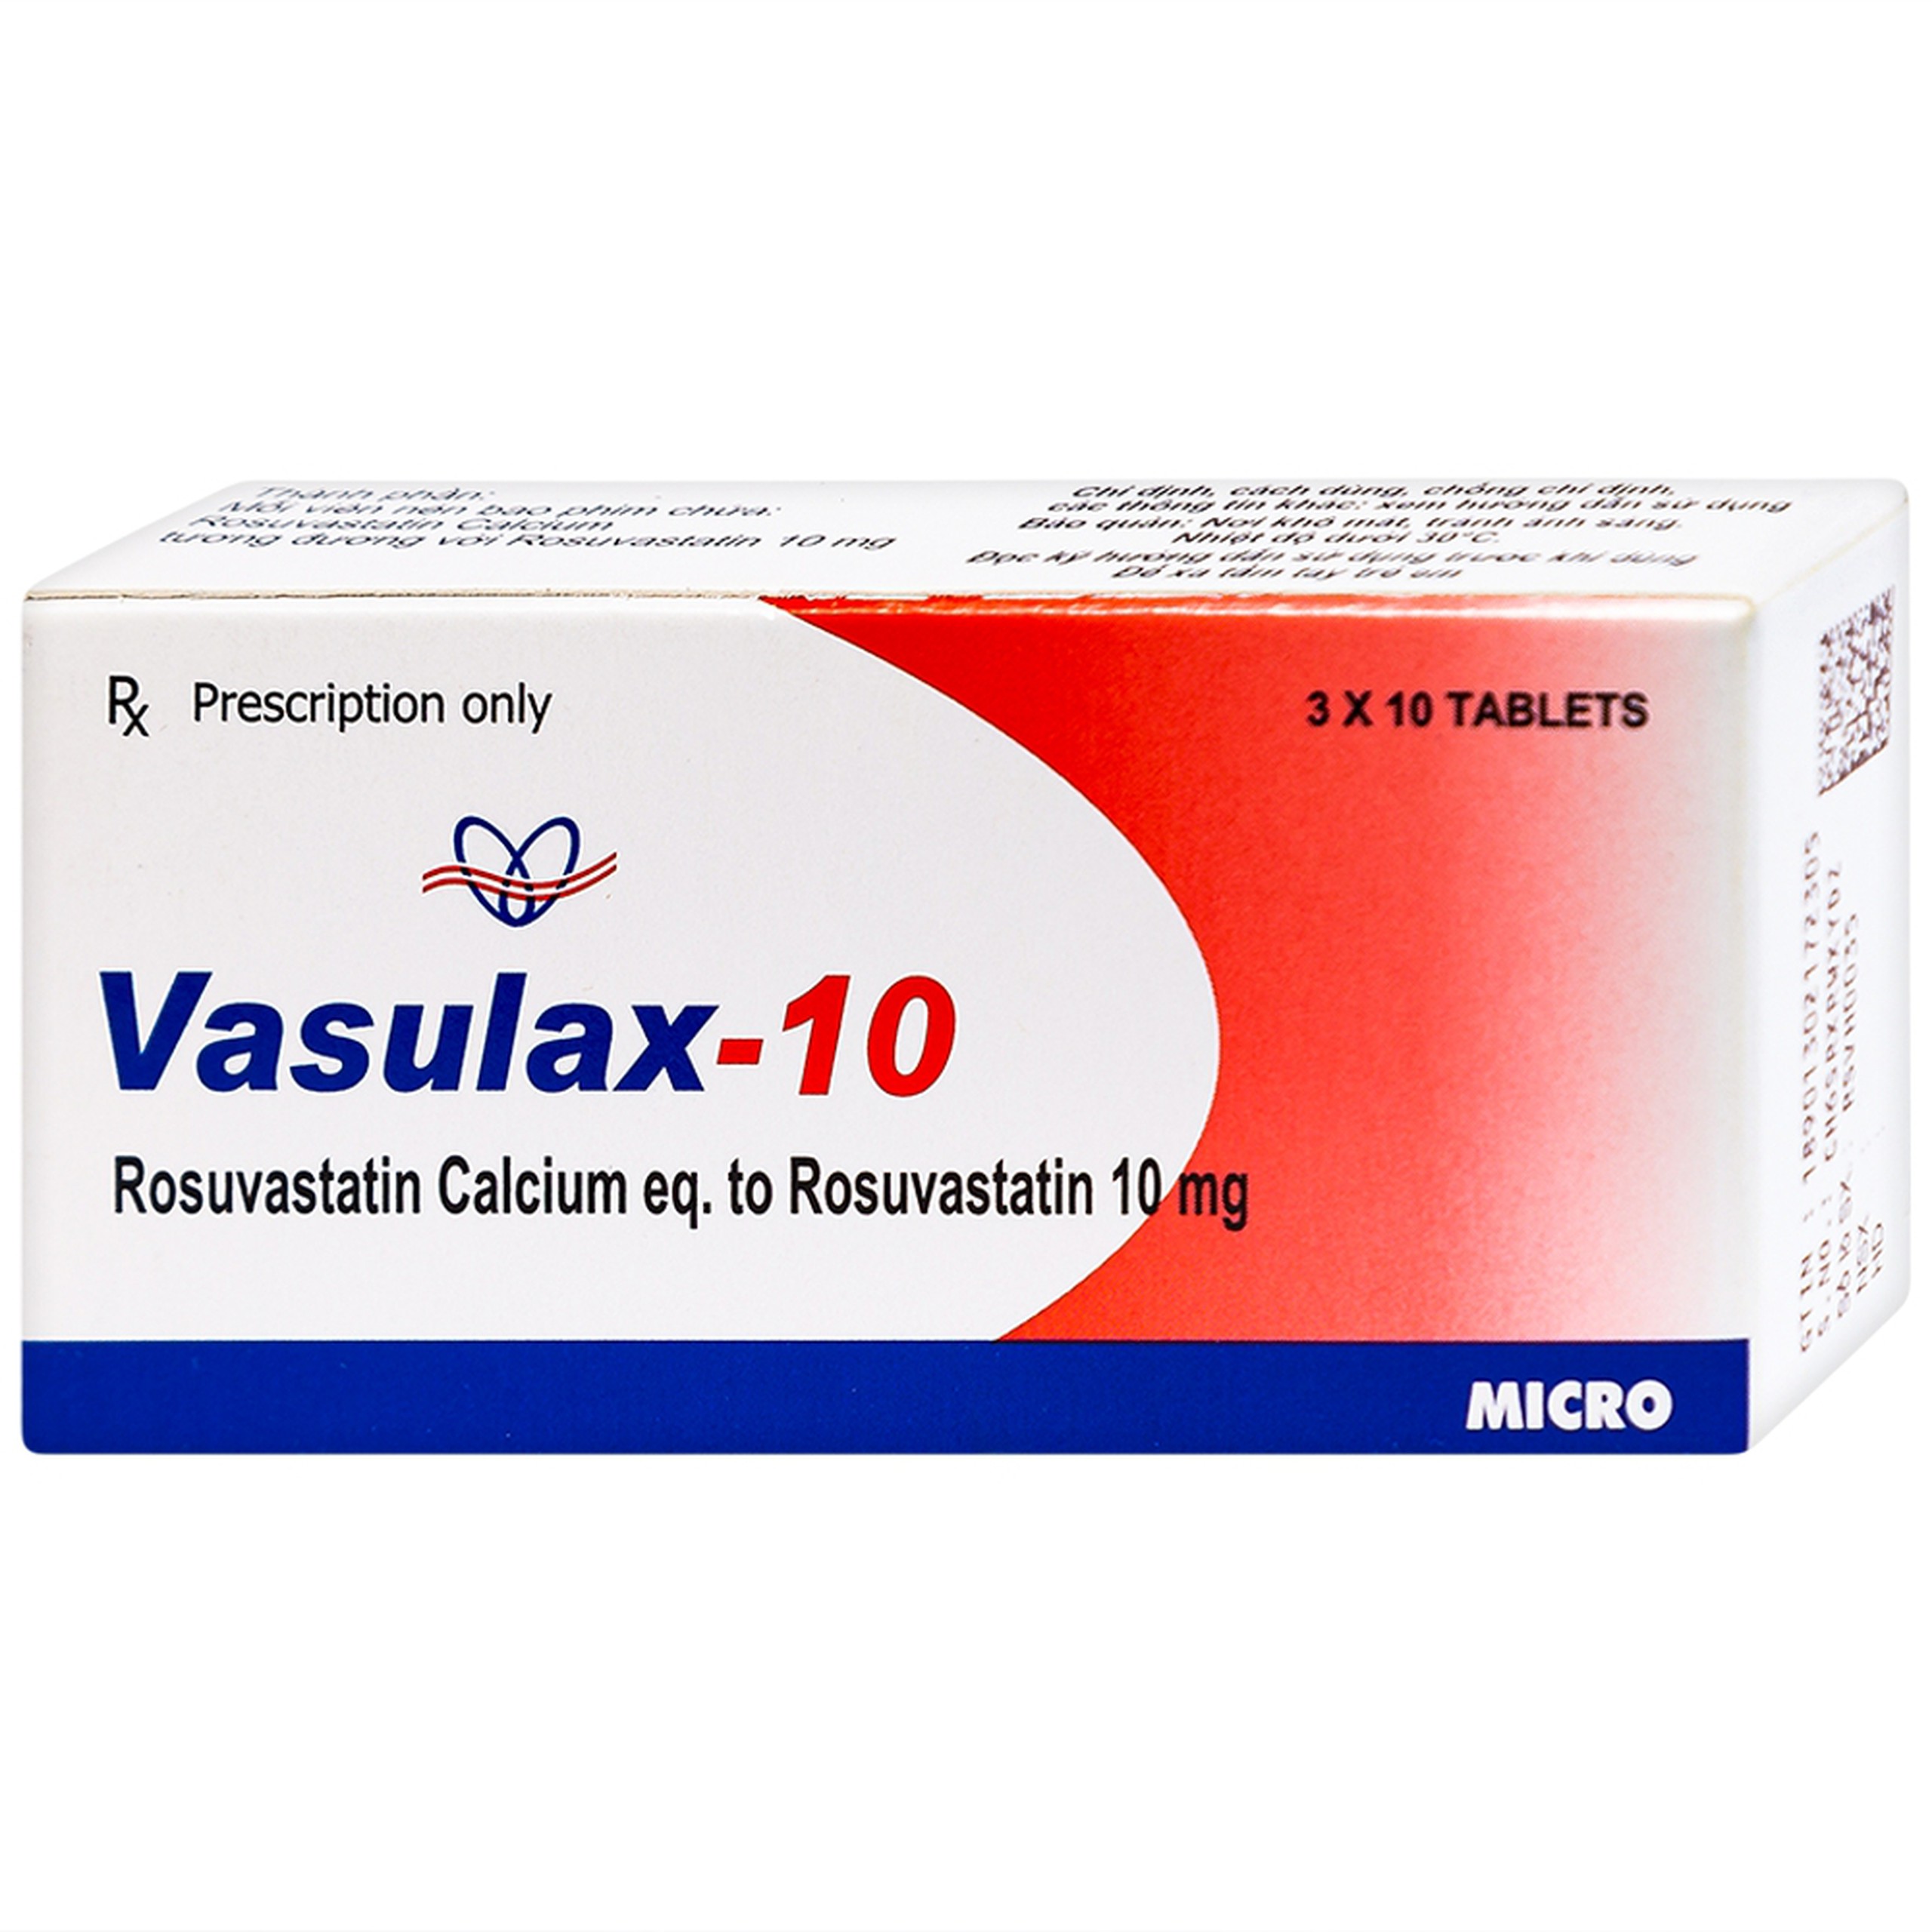 Thuốc Vasulax-10 Micro điều trị rối loạn lipid máu (3 vỉ x 10 viên)